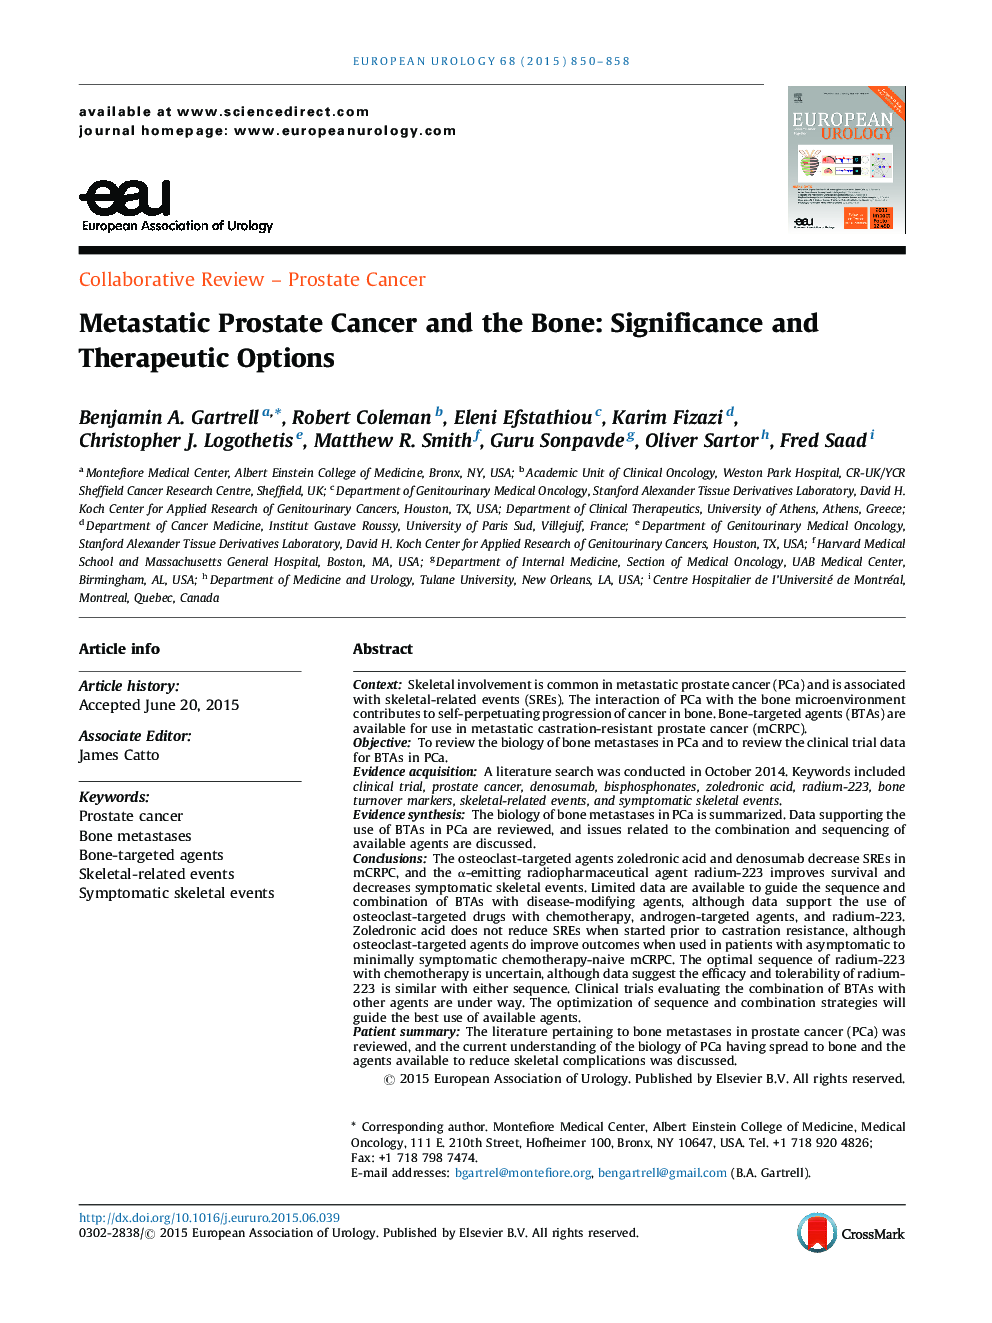 سرطان پروستات متناوب و استخوان: اهمیت و گزینه های درمانی 